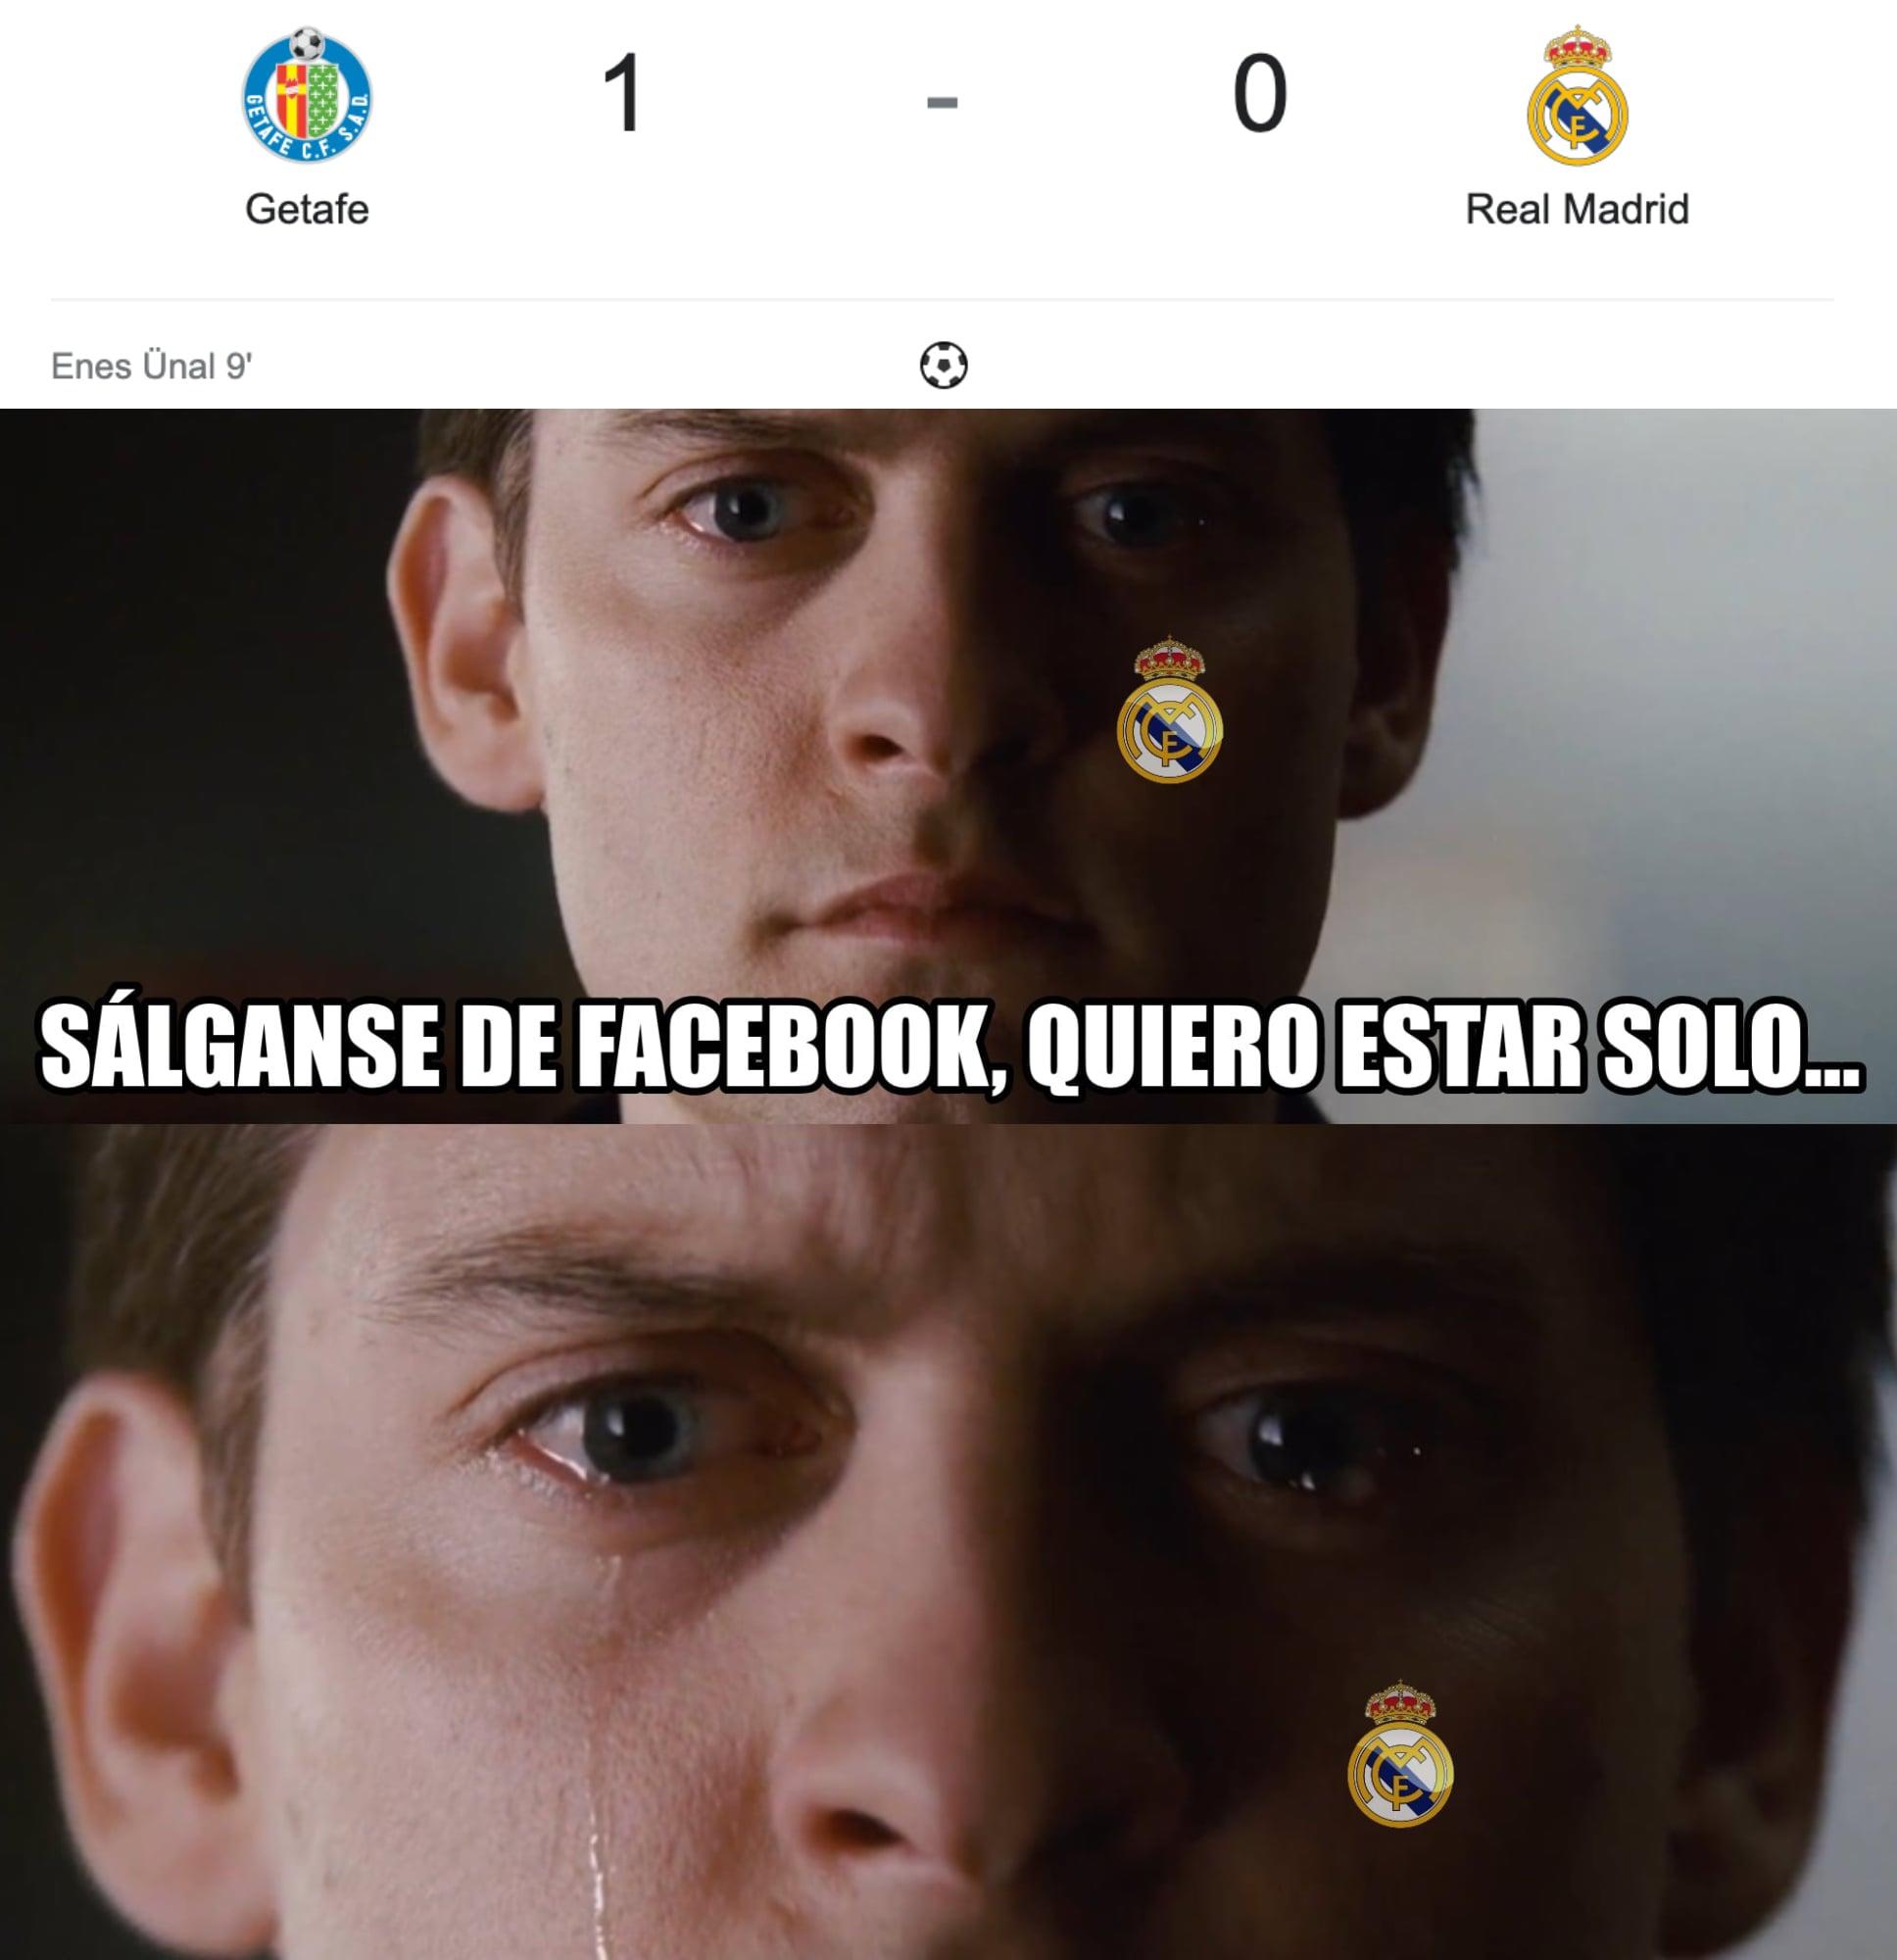 ¡Las burlas! Los jocosos memes que hacen pedazos al Real Madrid y Militao tras caer ante Getafe